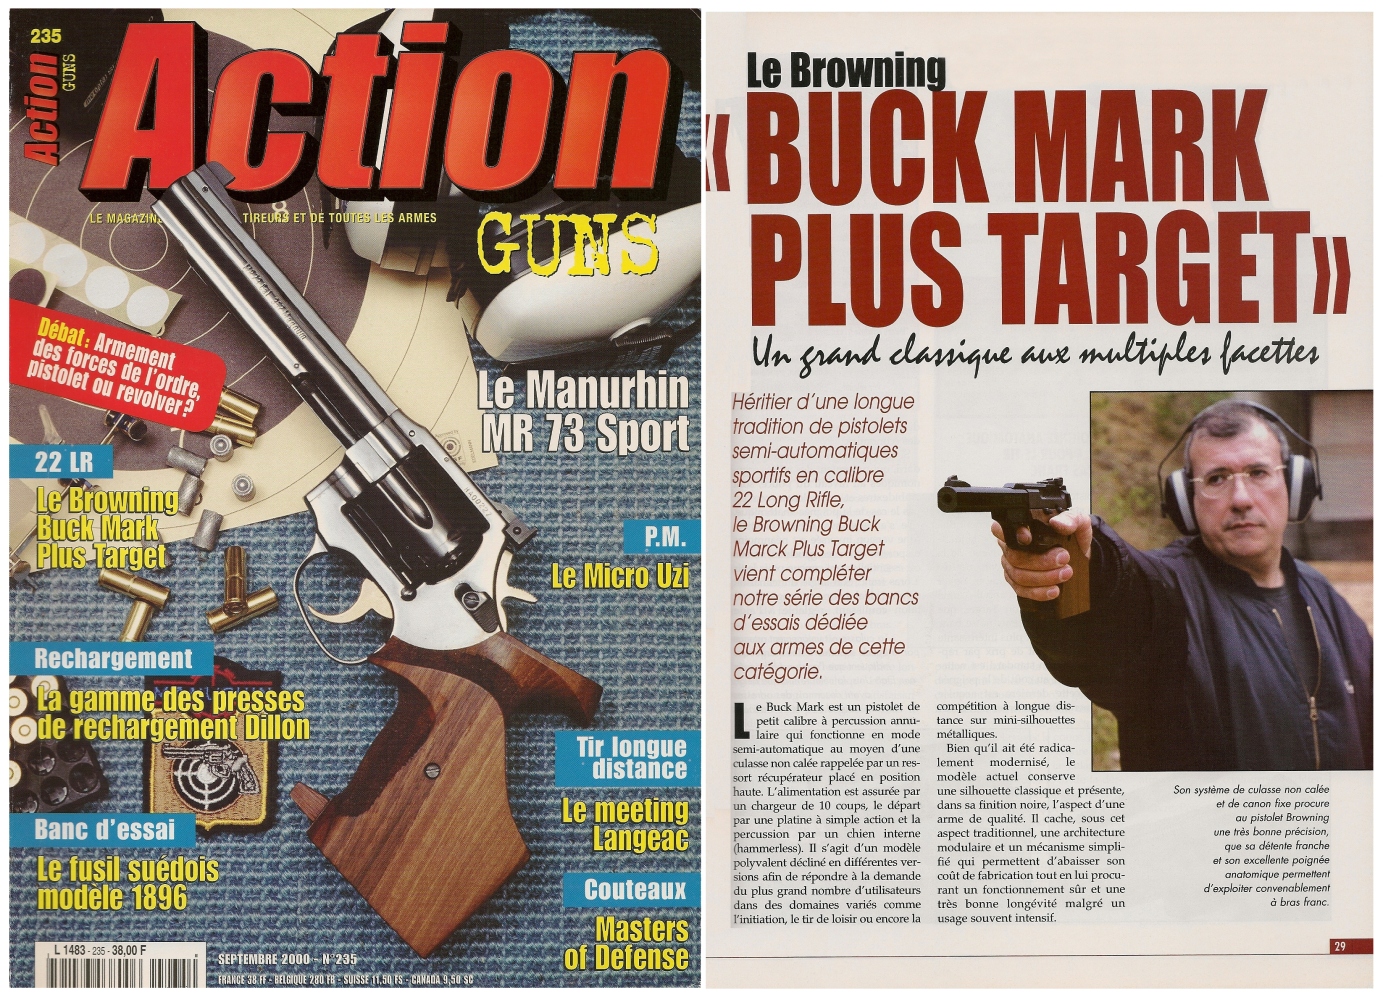 Le banc d'essai du pistolet Browning Buck Mark Plus Target a été publié sur 6 pages dans le magazine Action Guns n° 235 (septembre 2000). 